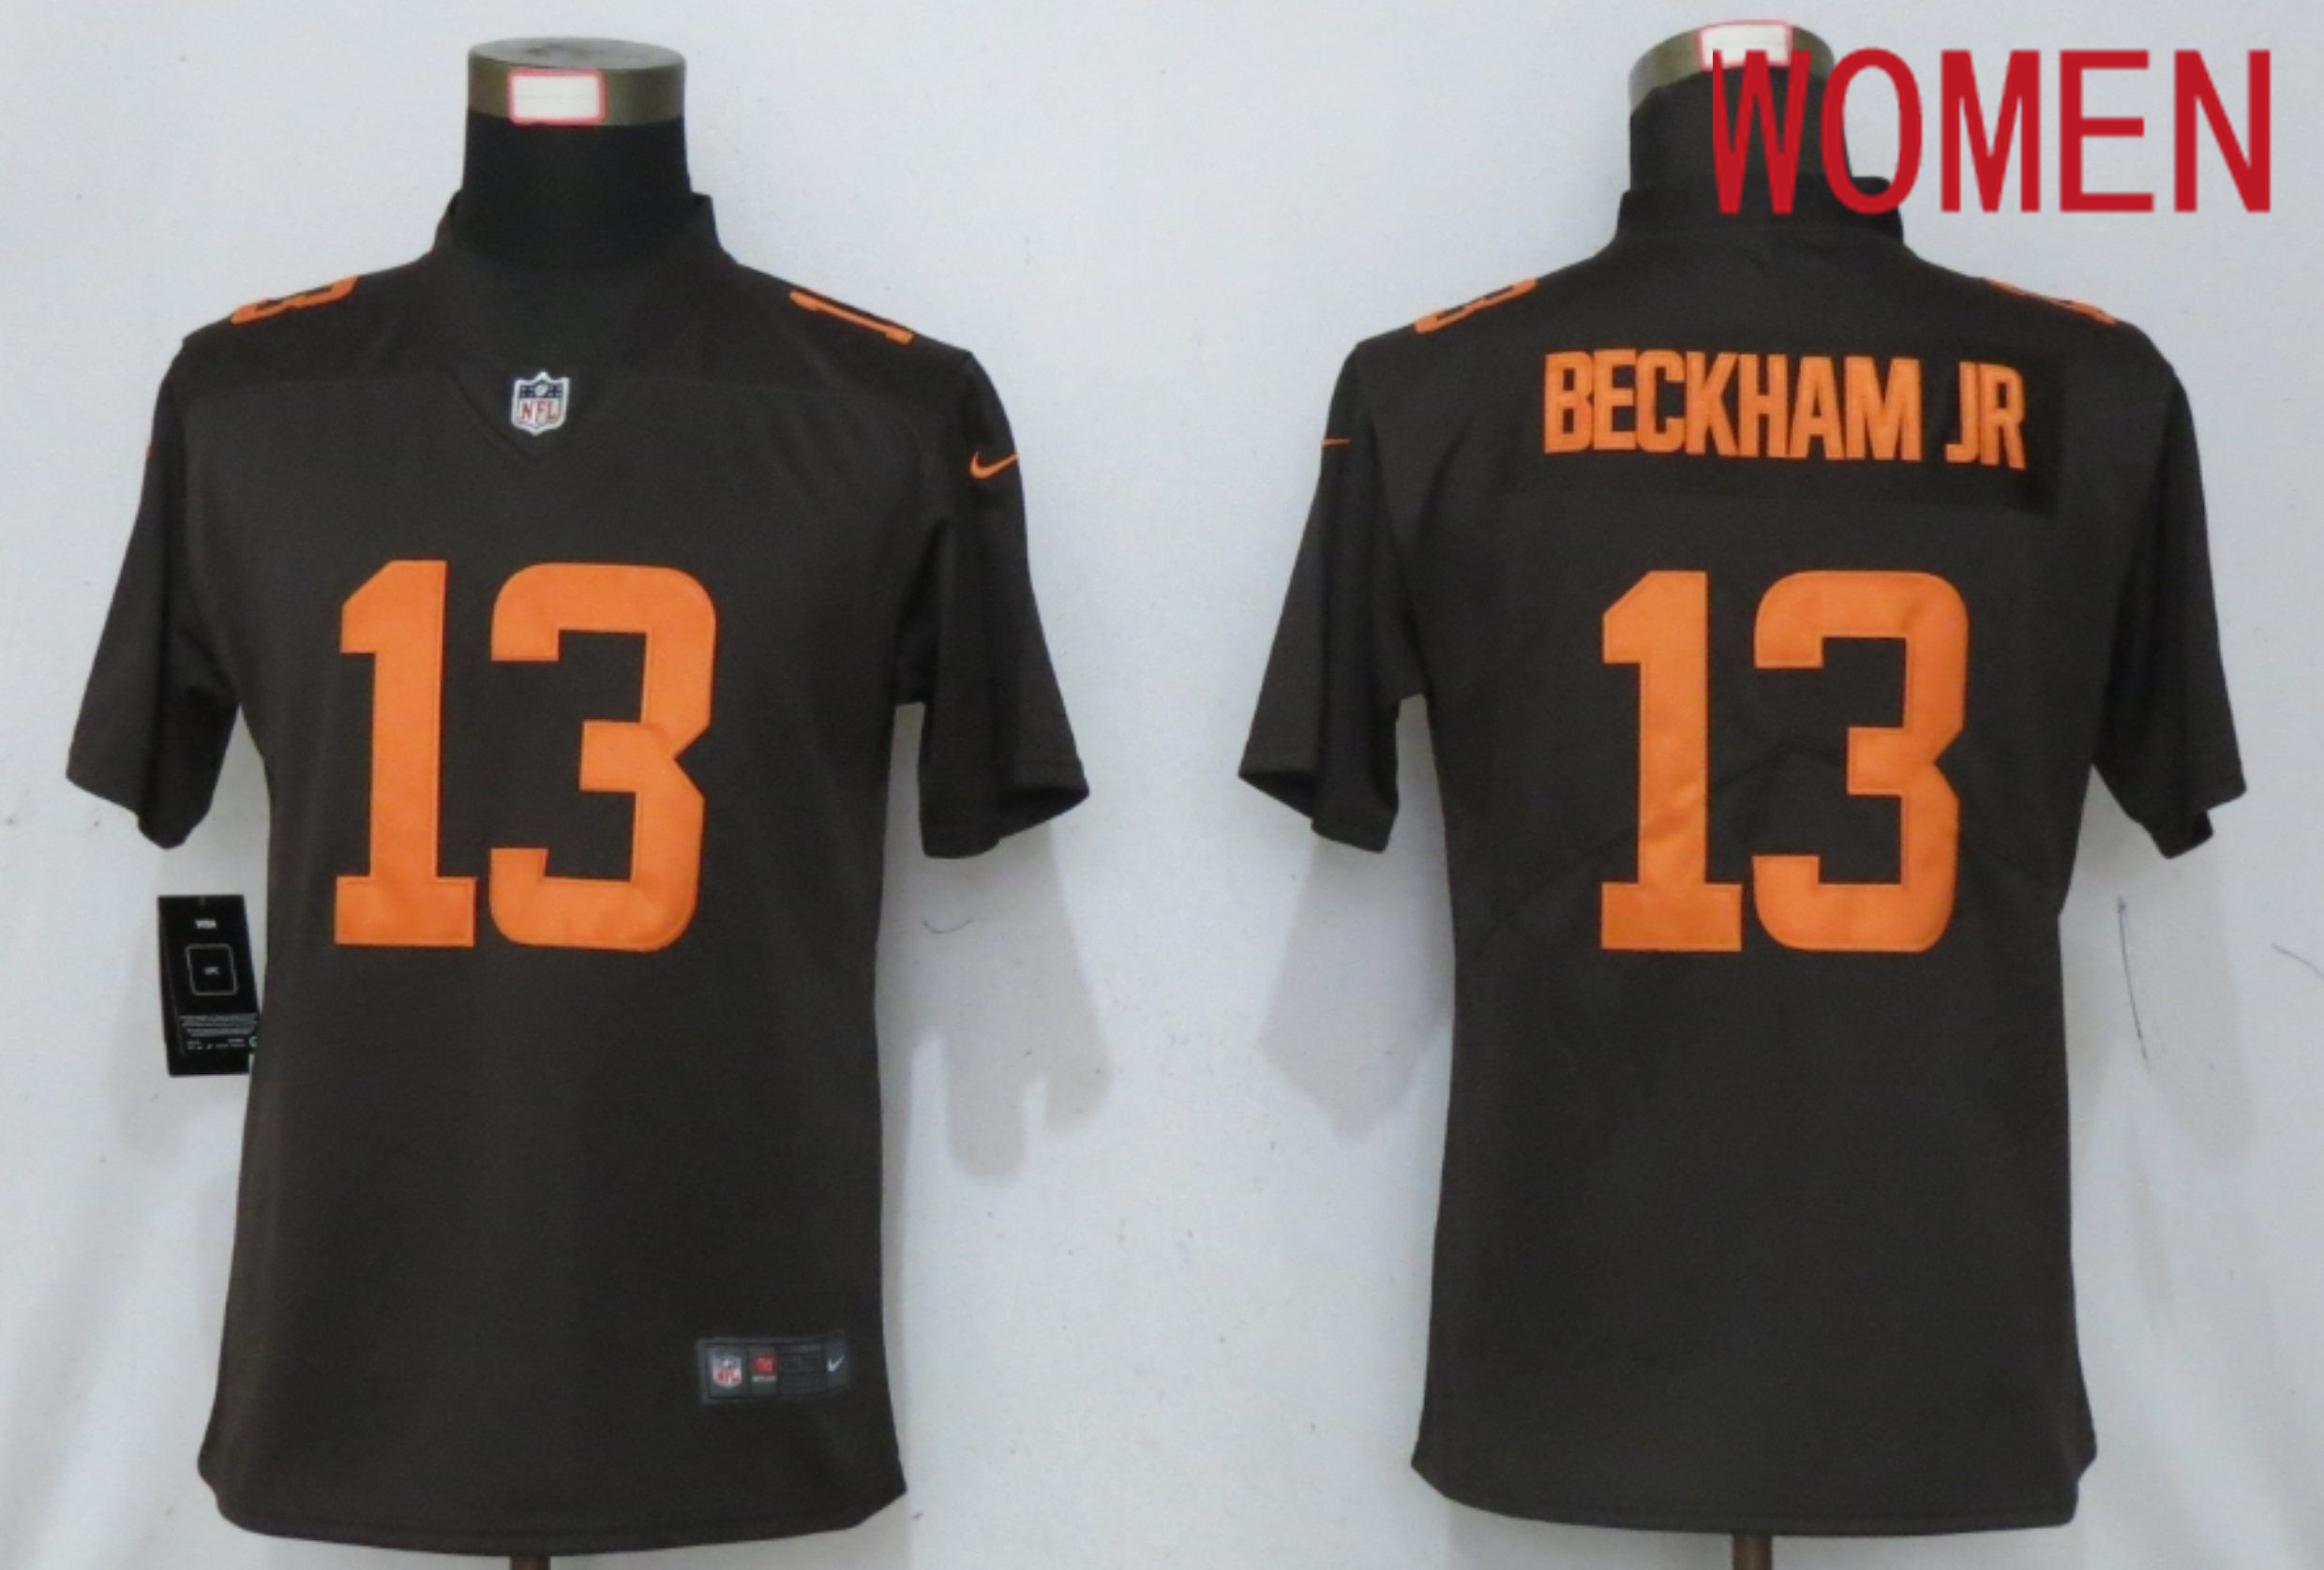 Supply cheap jerseys Men Cleveland Browns 13 Beckham jr White shadow 2020 NFL Nike Jerseys